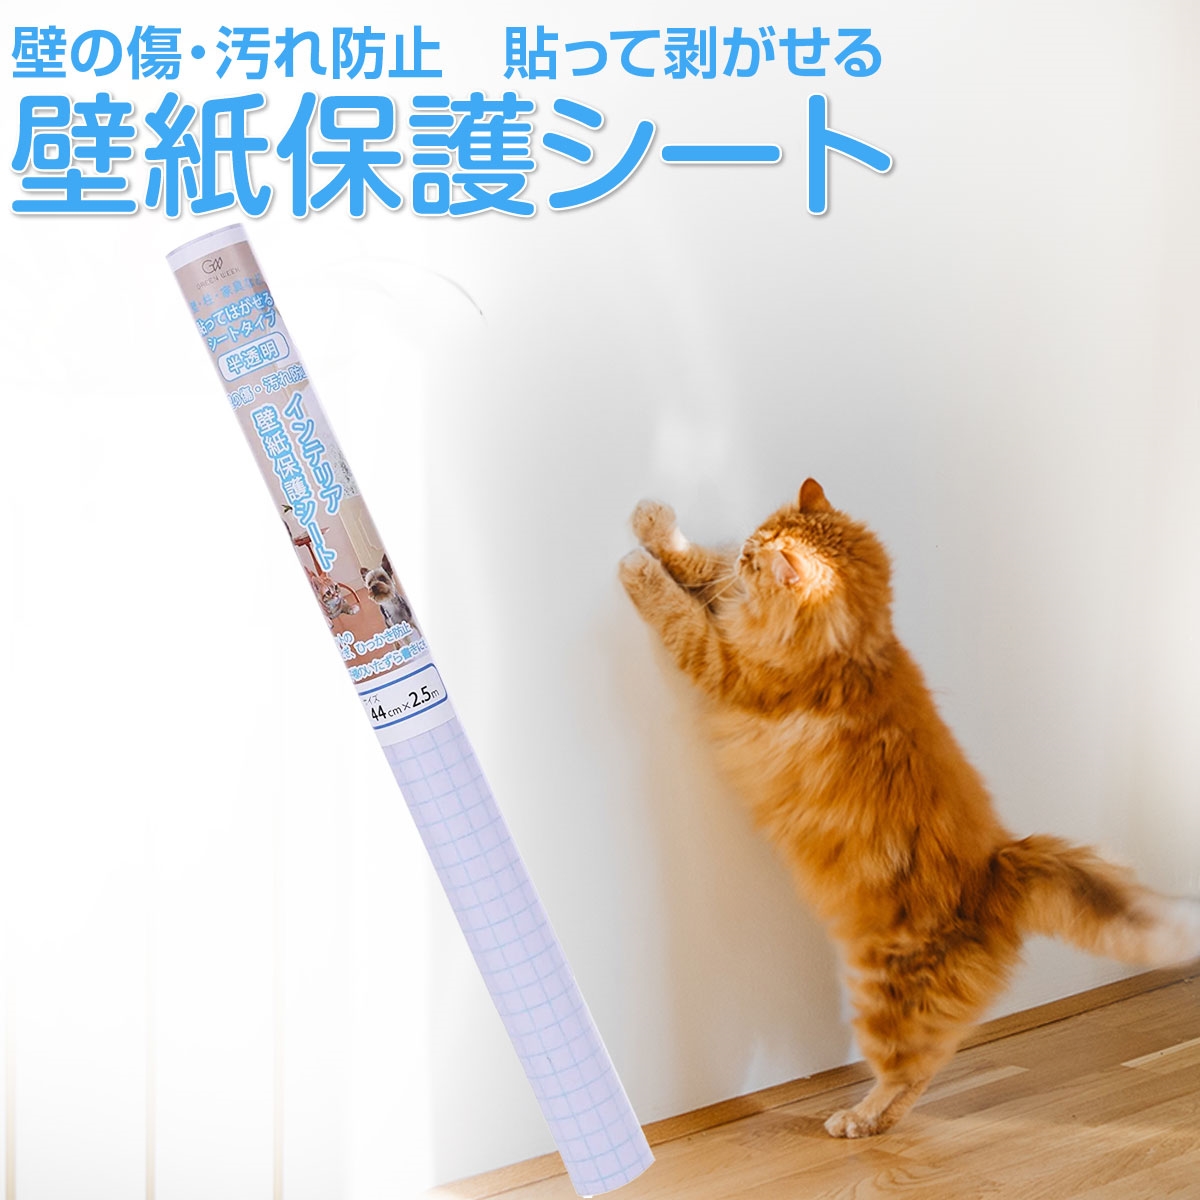 ビルバック 犬猫用 歯磨きペースト バニラミントフレーバー 70g : 03990331 : ペットCURE DgS Yahoo店 - 通販 -  Yahoo!ショッピング